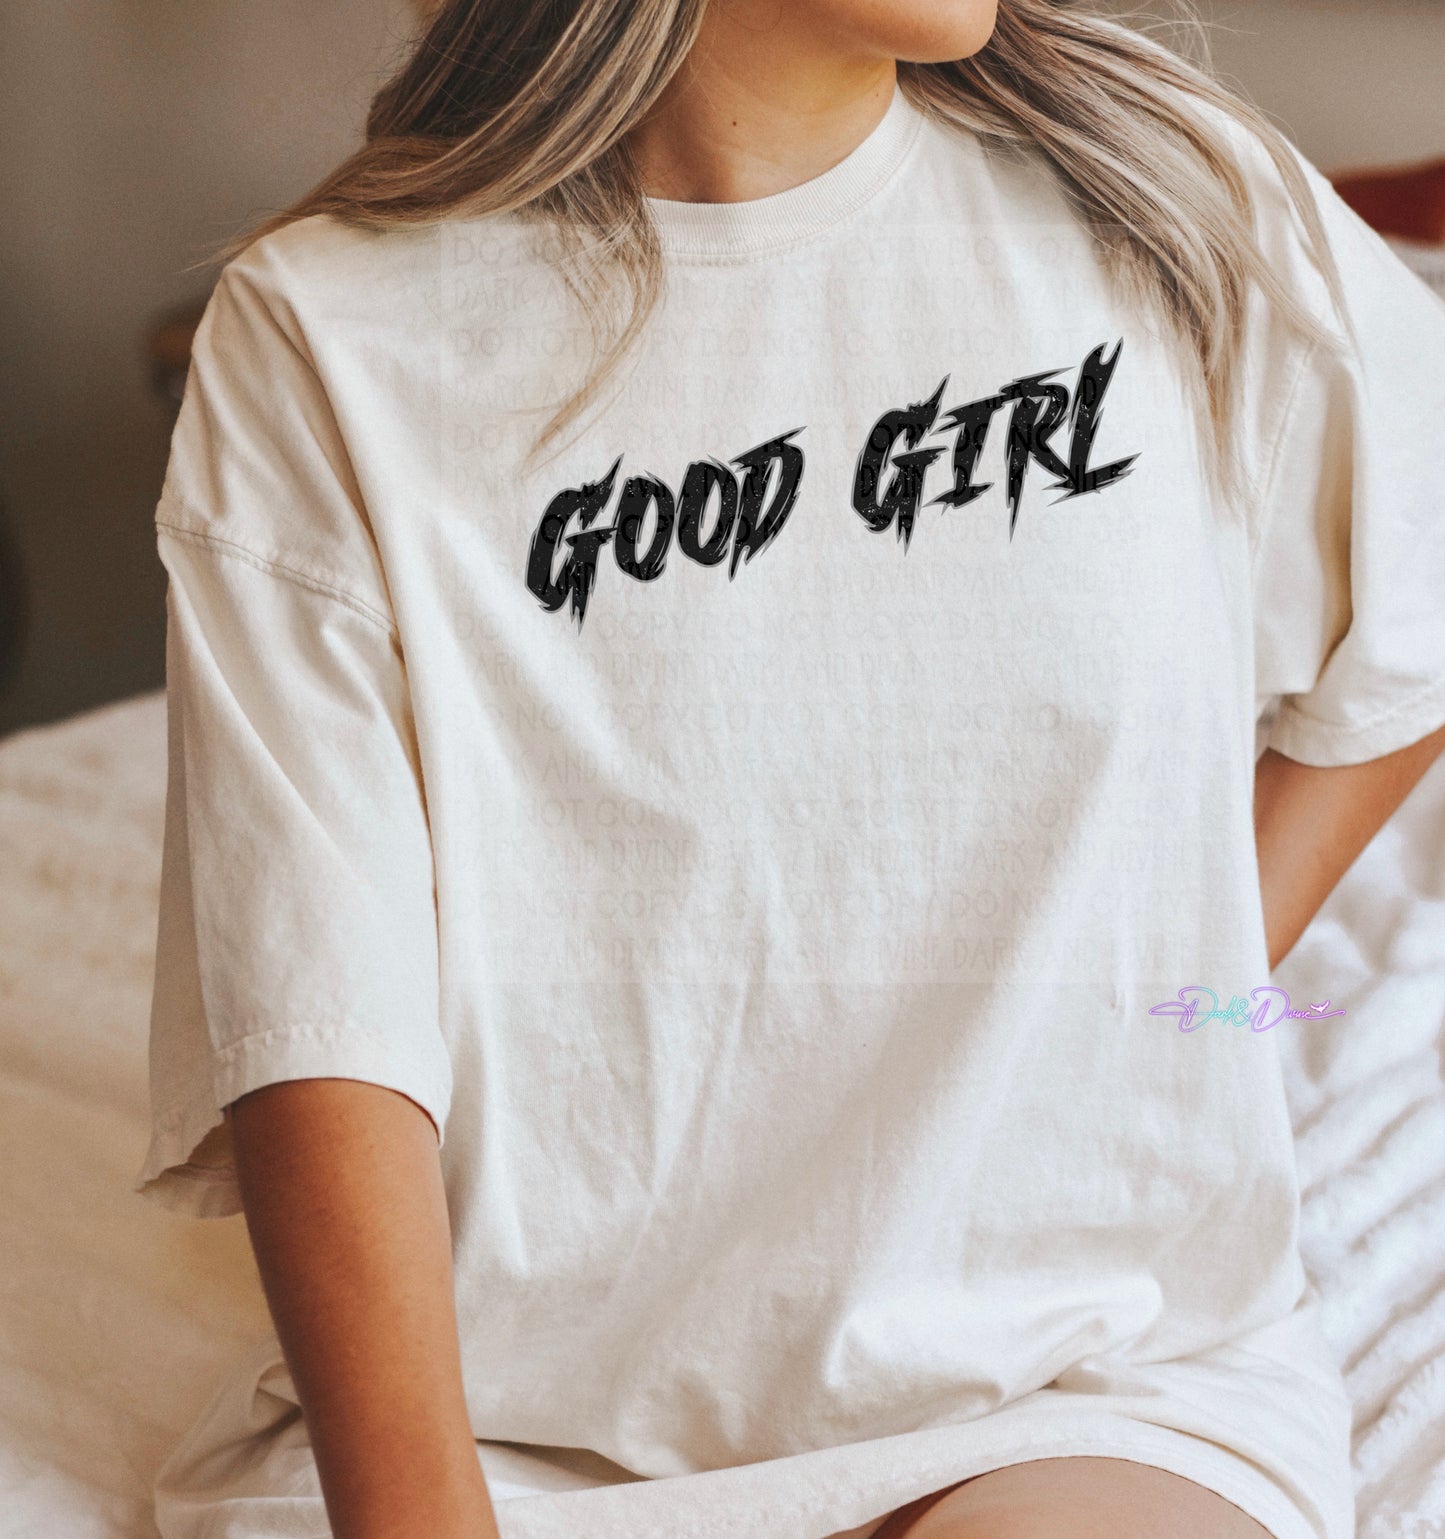 Good girl -DIGITAL DOWNLOAD